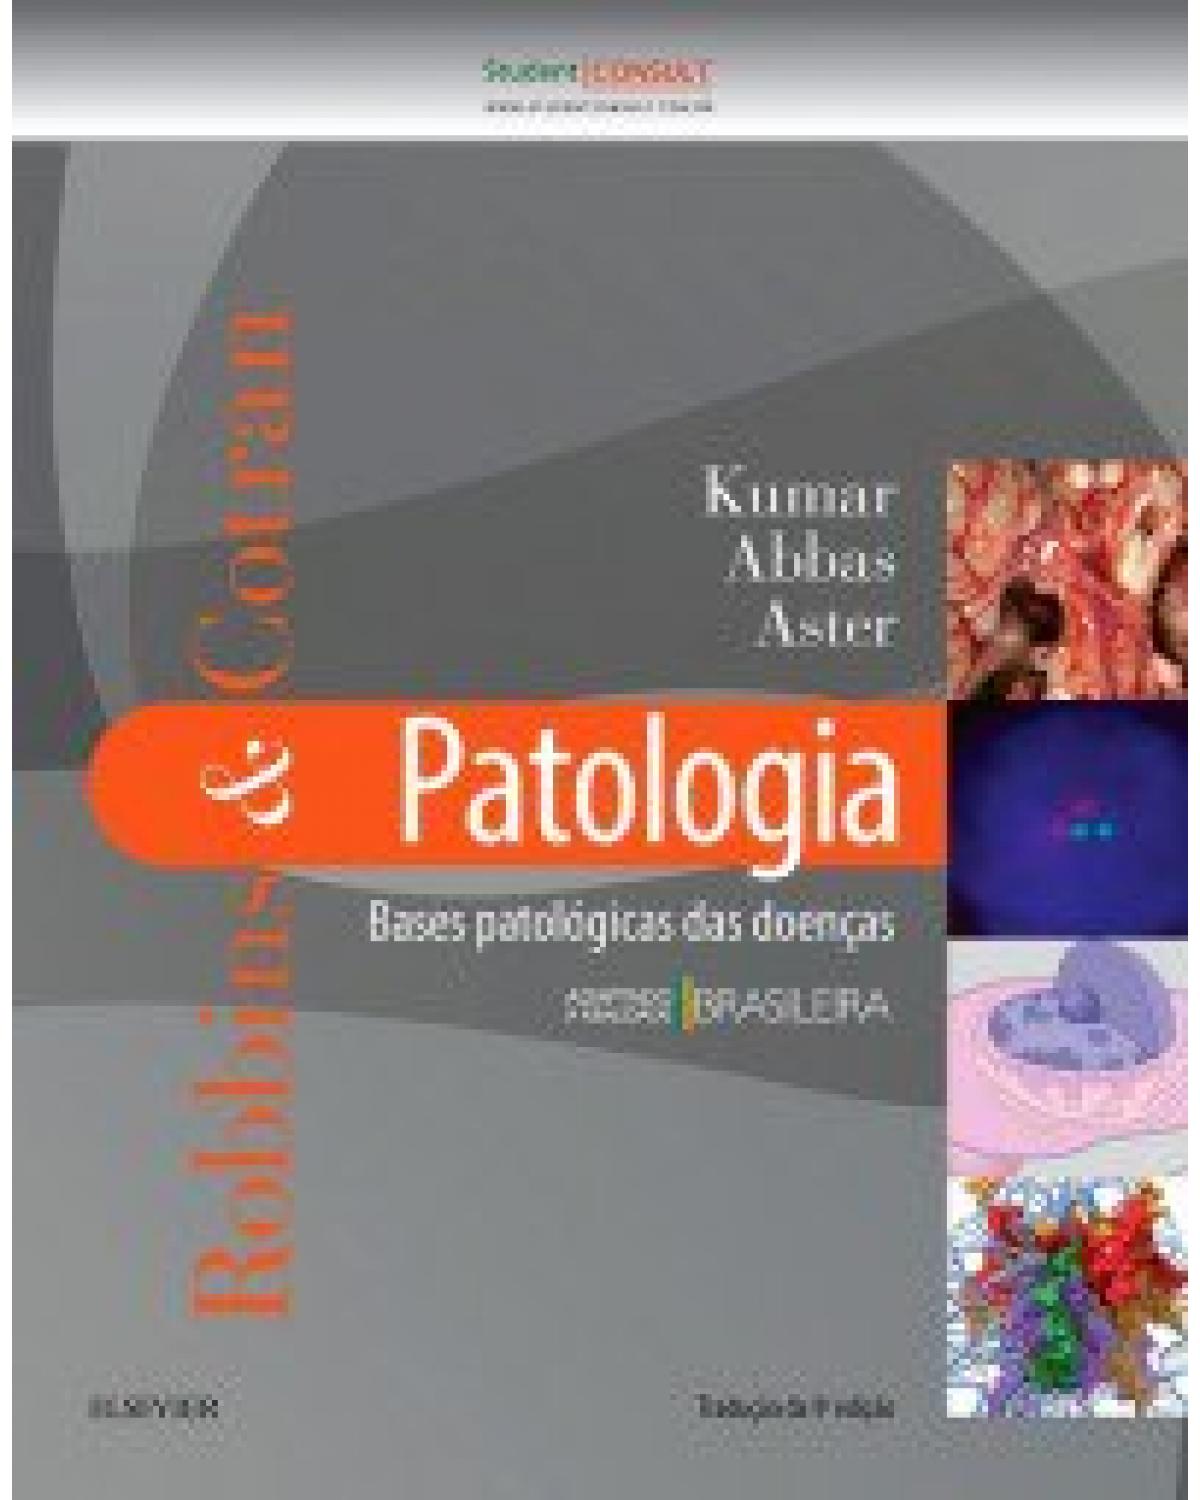 Robbins & Cotran - Patologia - bases patológicas das doenças - 9ª Edição | 2016